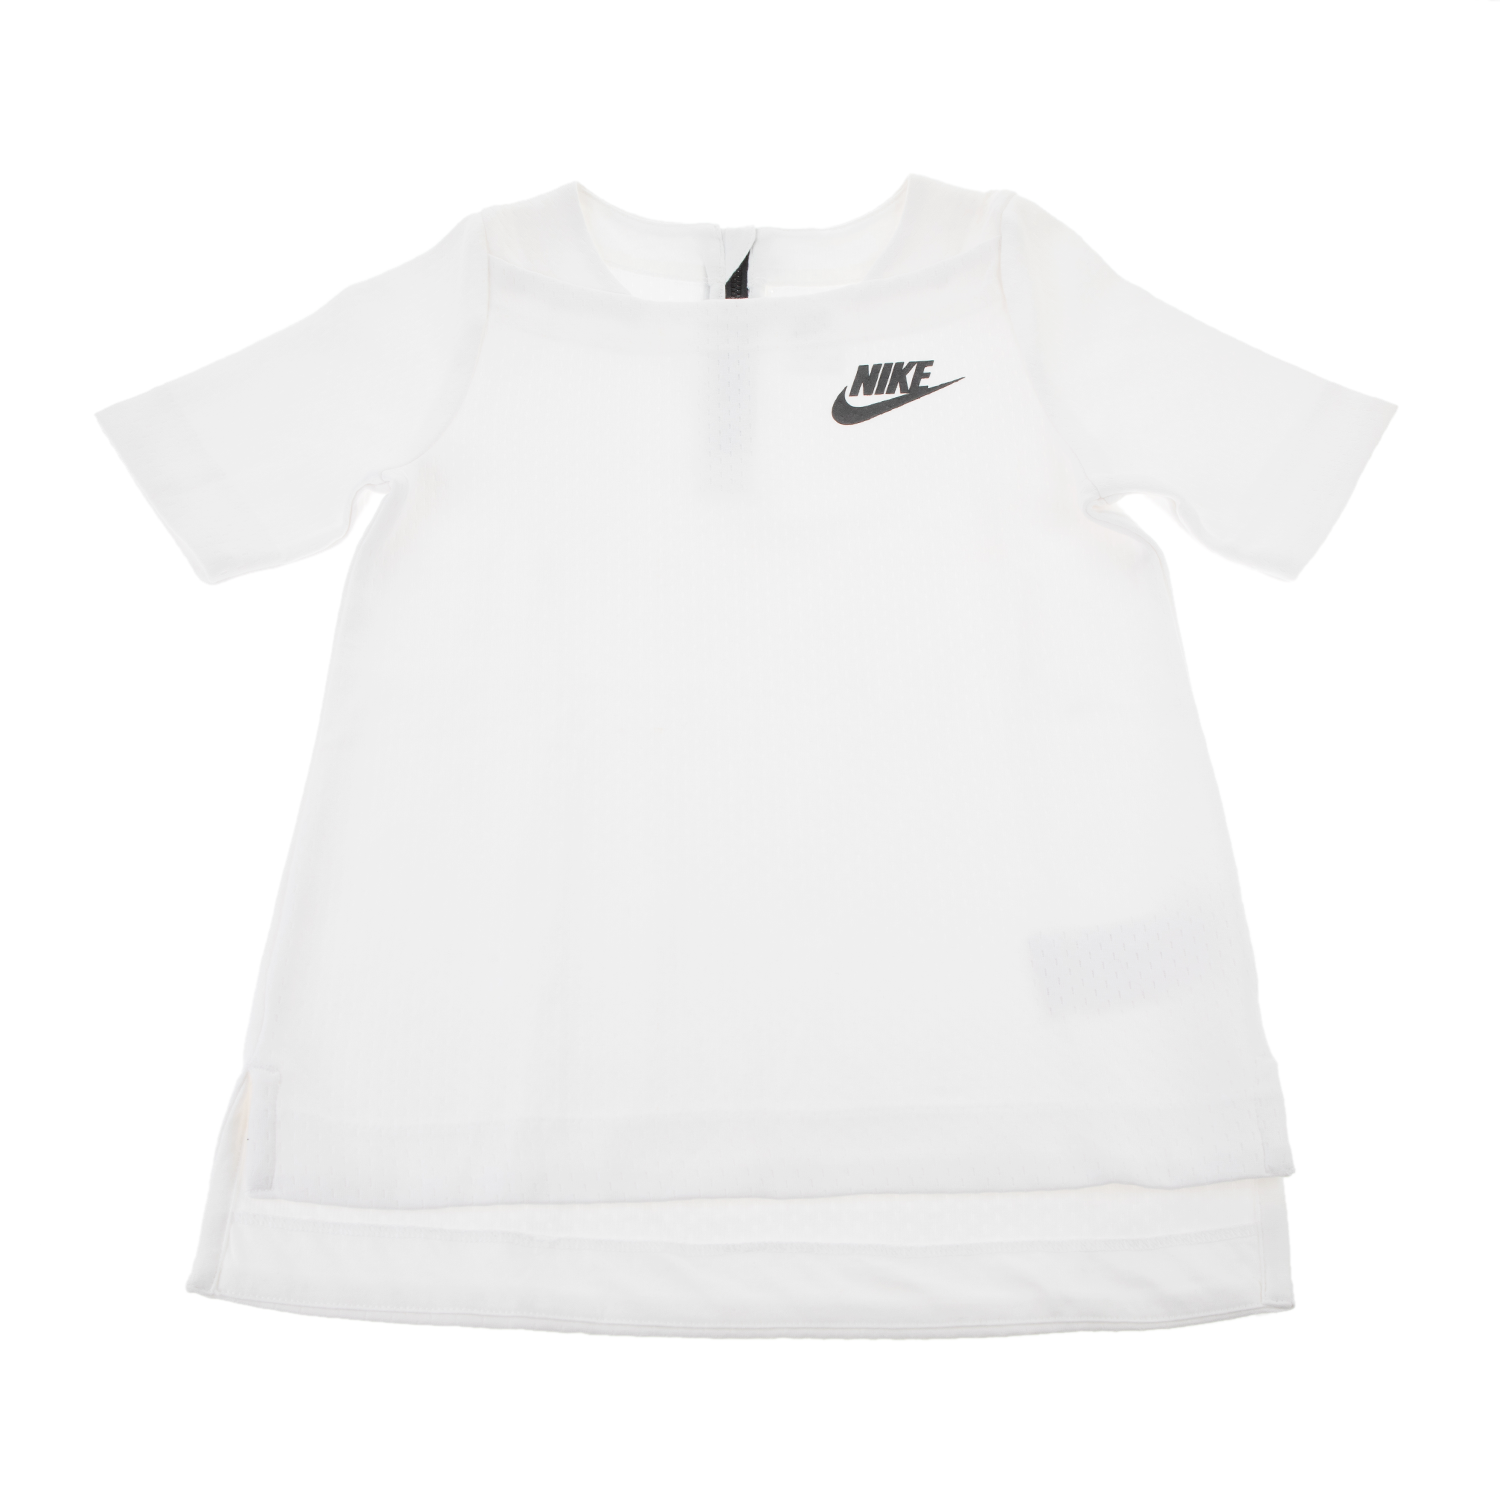 Παιδικά/Girls/Ρούχα/Αθλητικά NIKE - Παιδική μπλούζα NIKE SPORTSWEAR TECH FLEECE λευκή